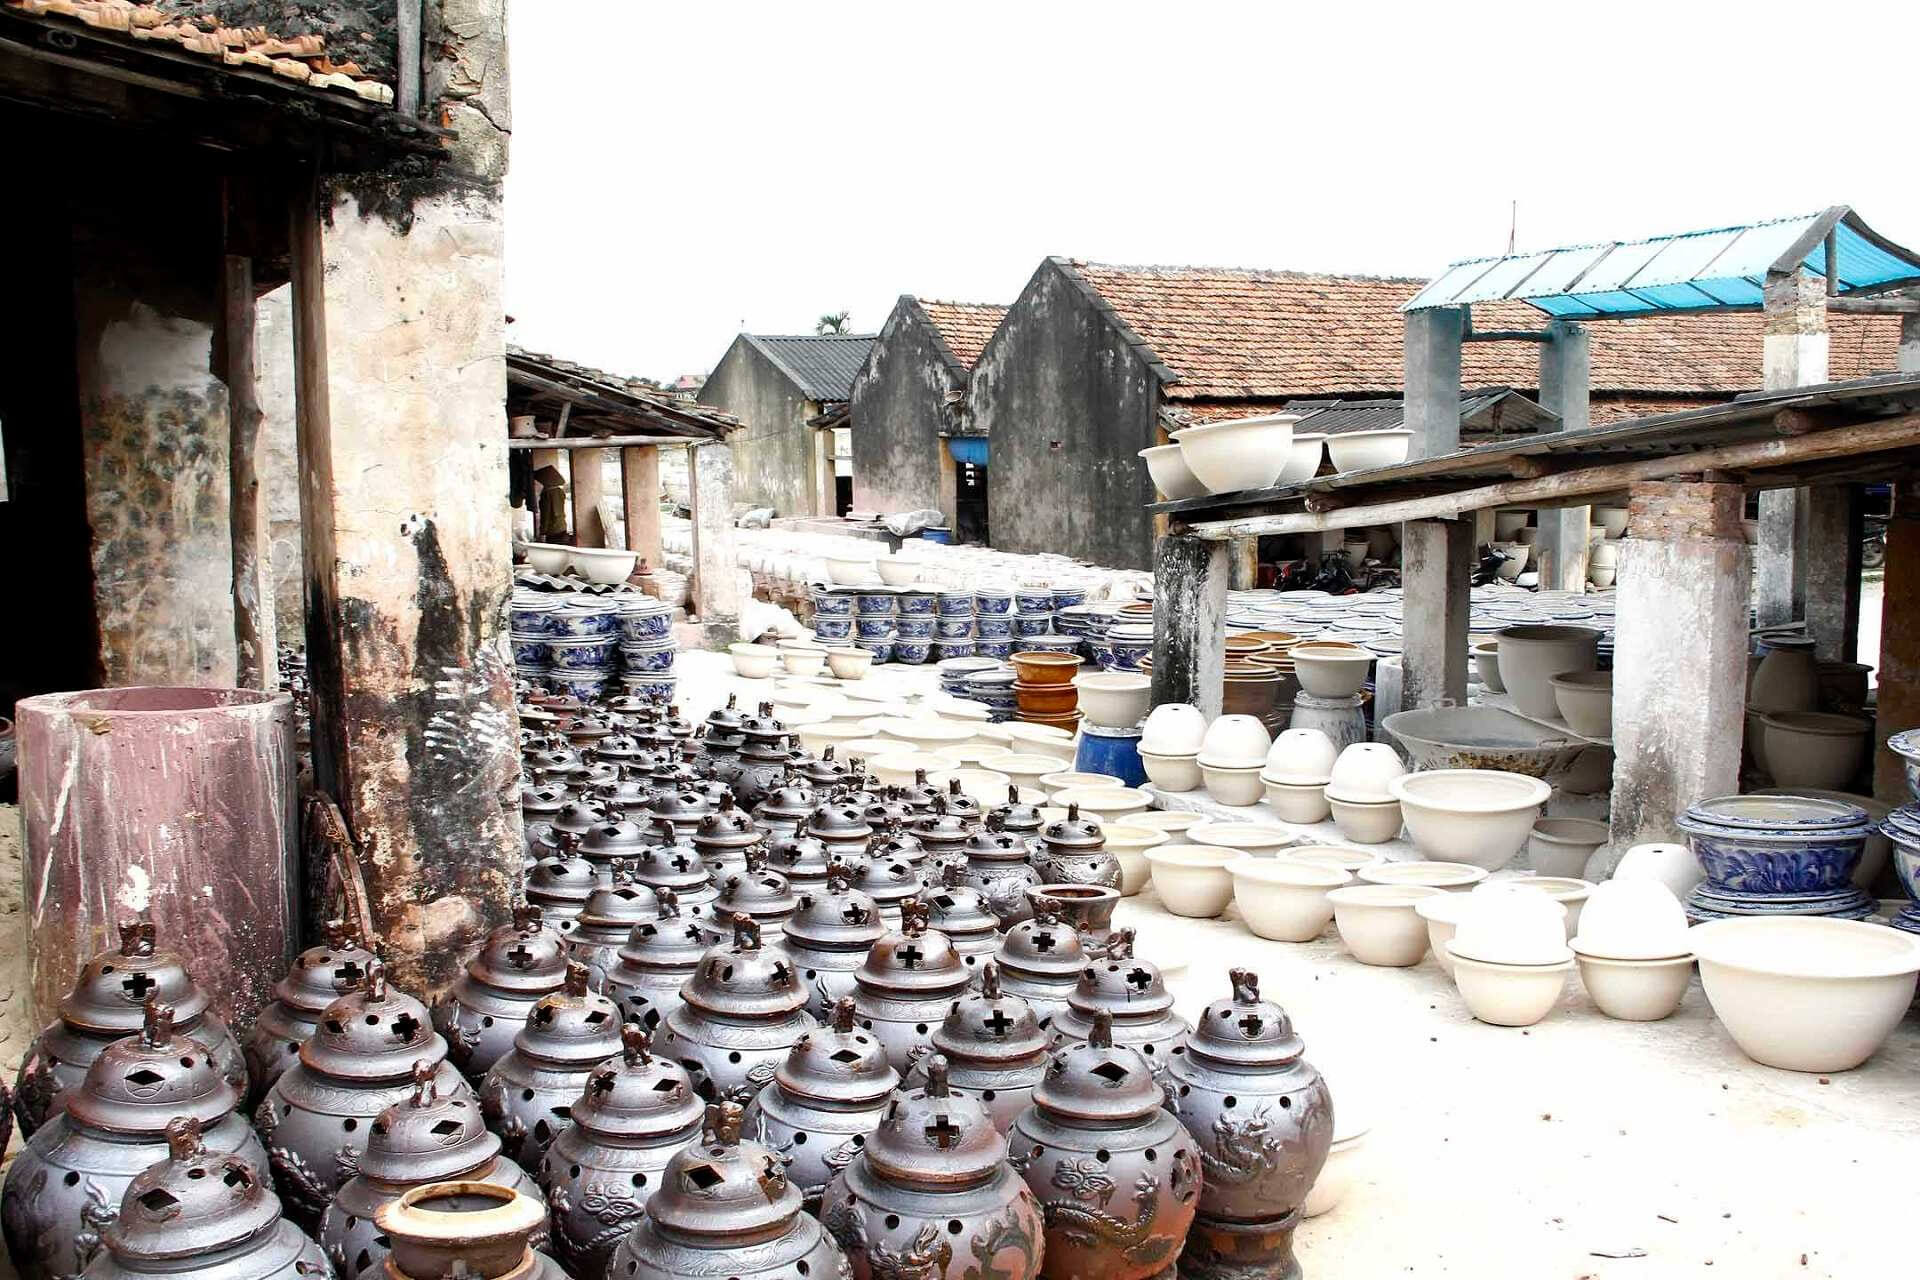 Visit Handicraft Villages in Hanoi